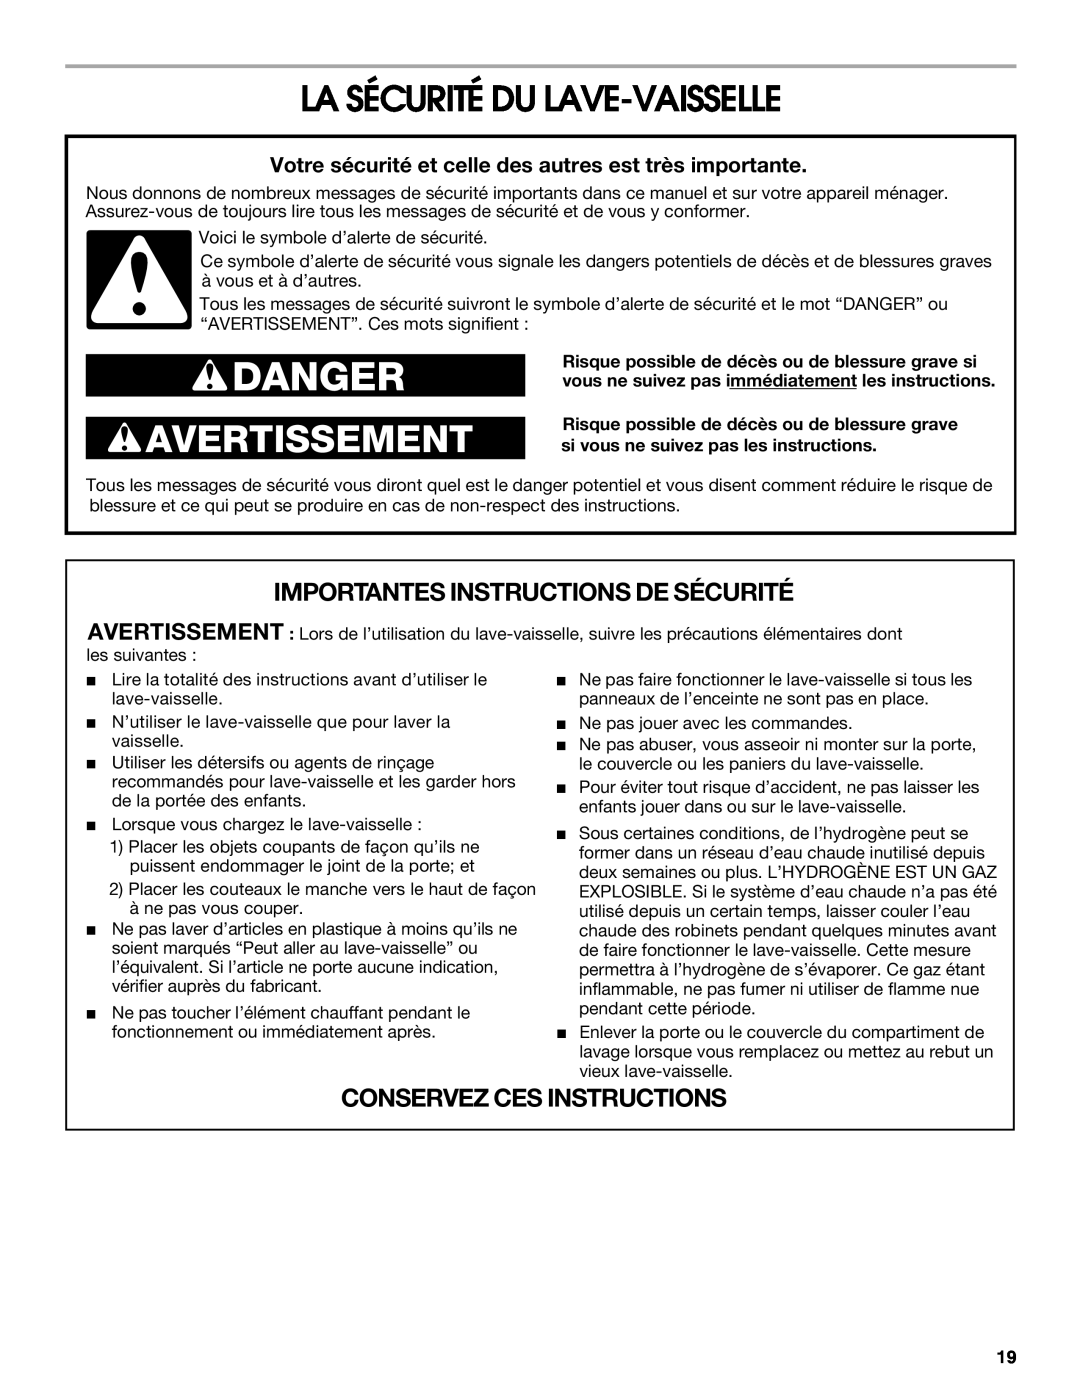 Whirlpool IUD8000R manual La Sécurité Du Lave-Vaisselle, Danger, Avertissement, Importantes Instructions De Sécurité 